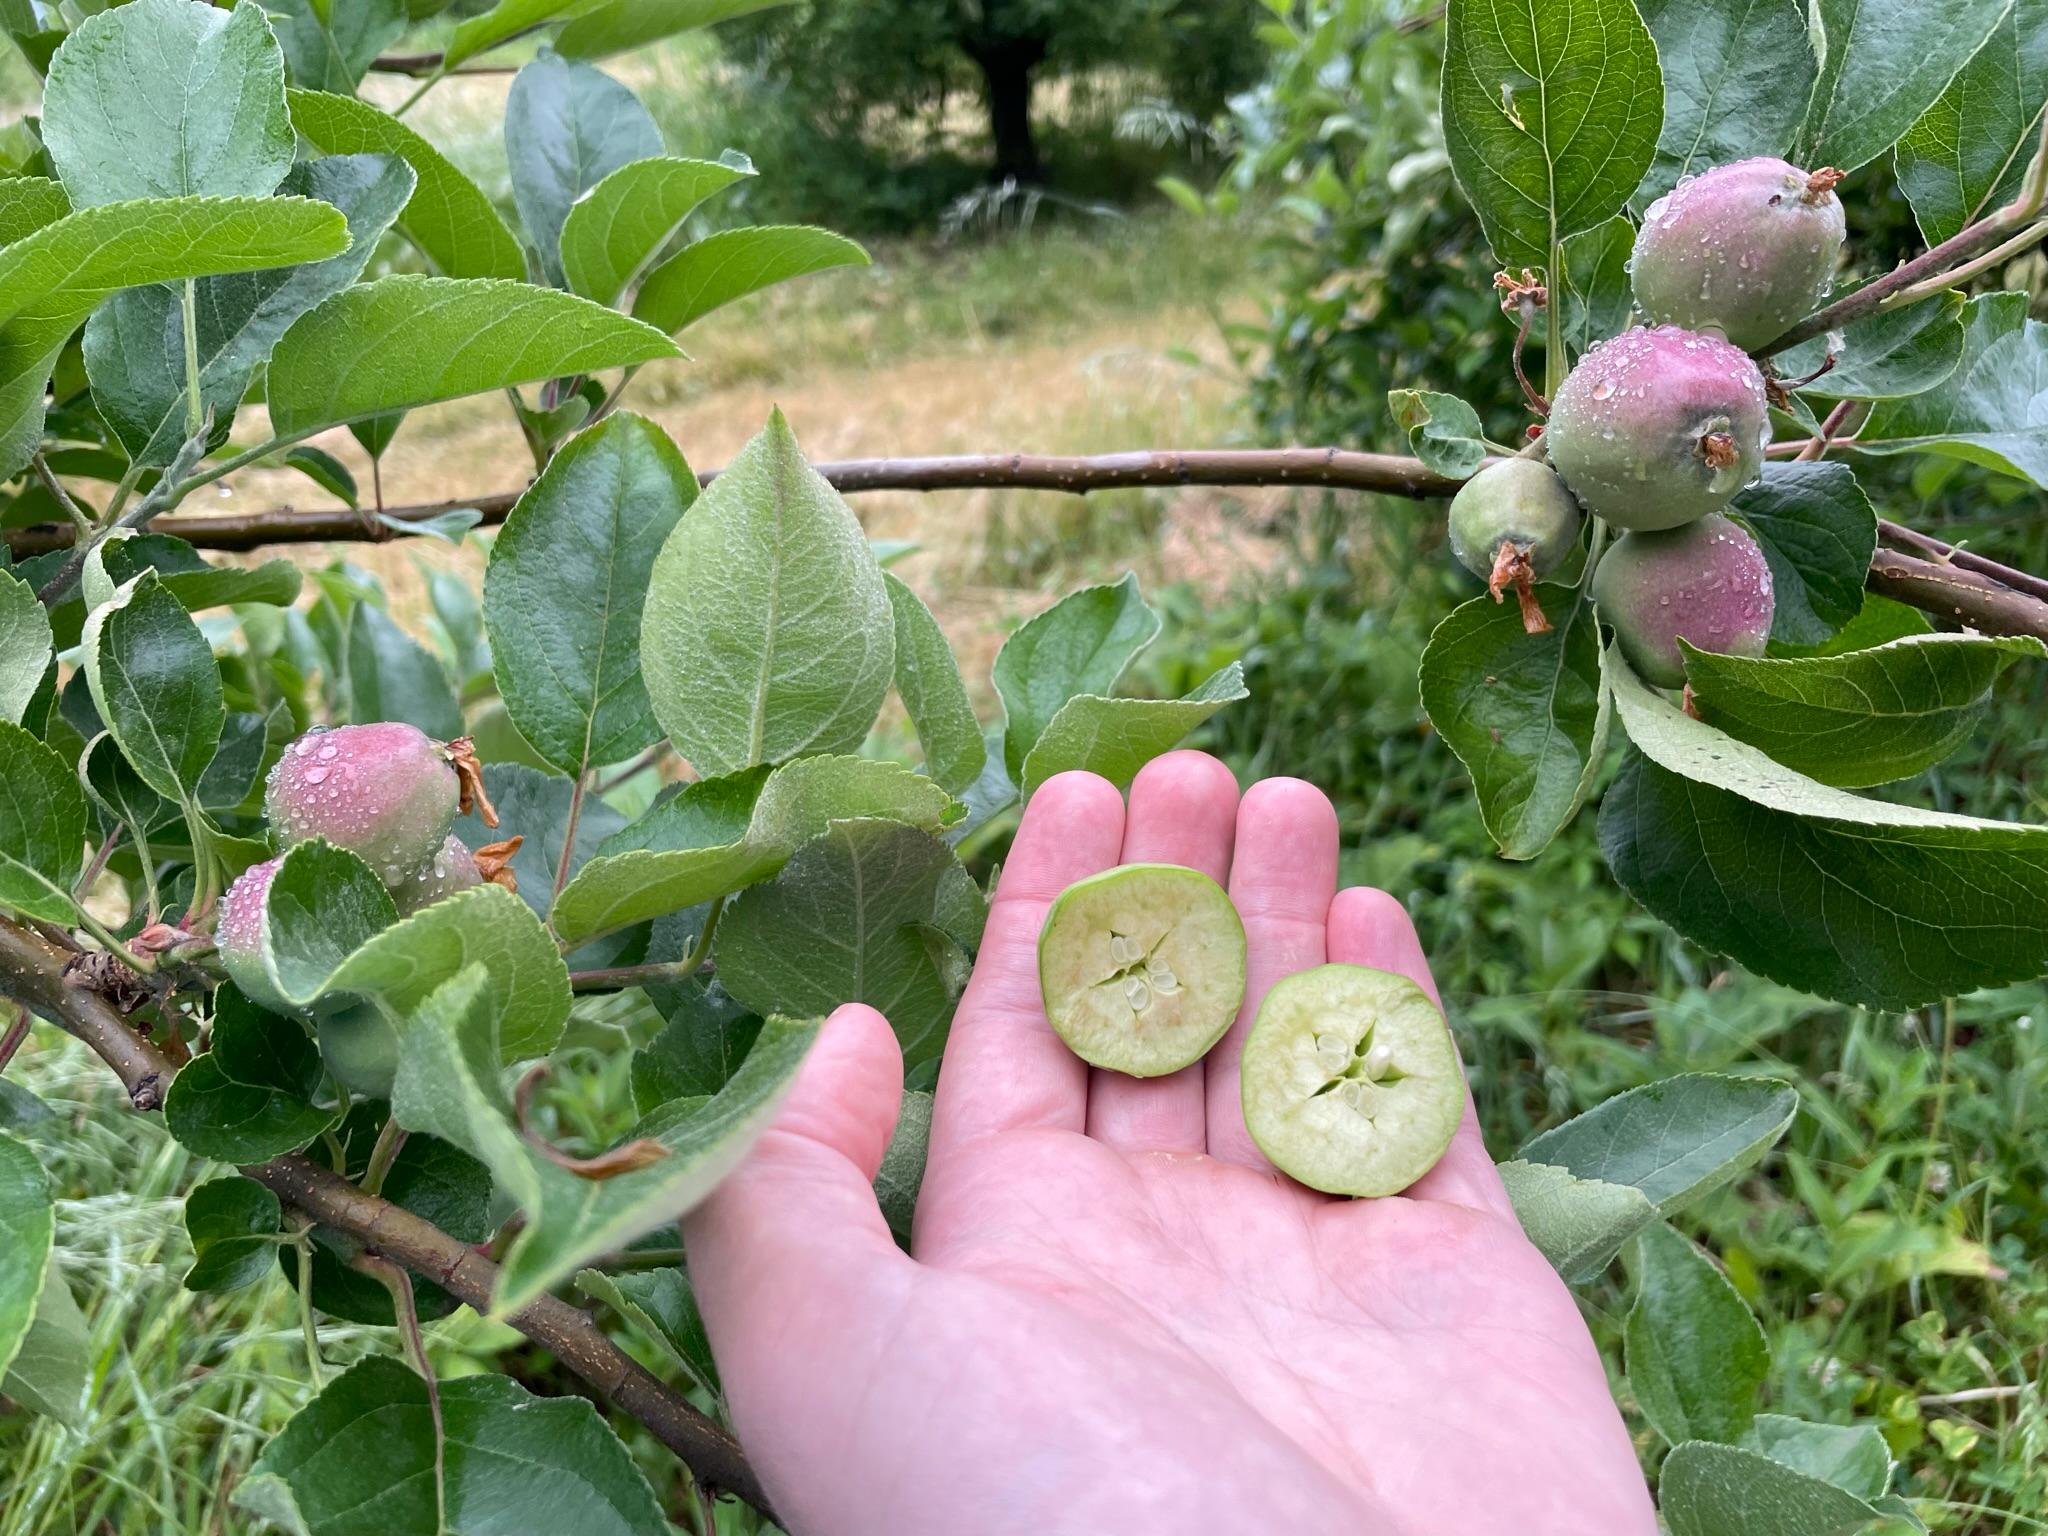 Apple fruitlets